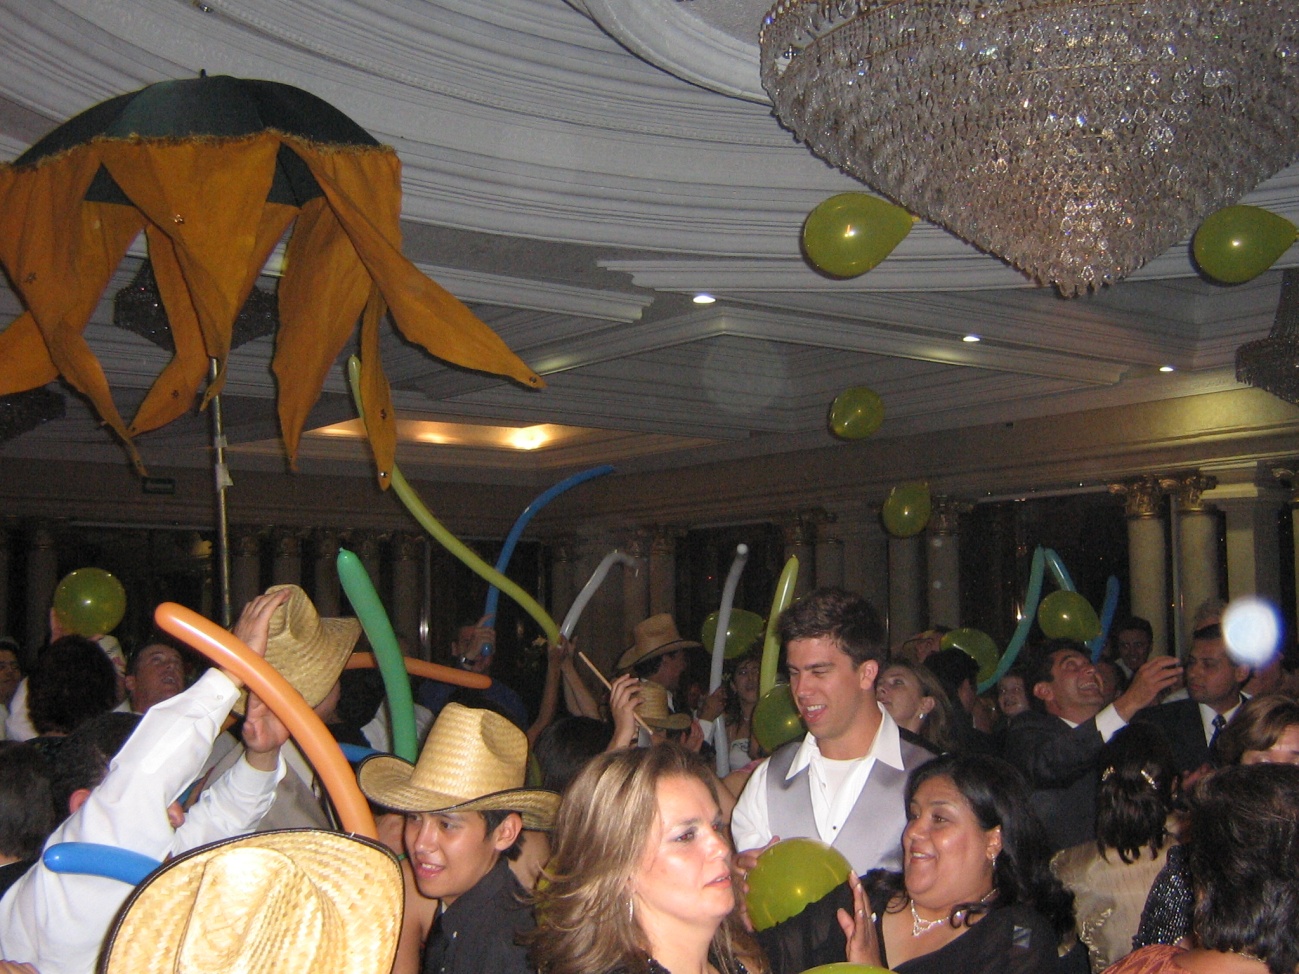 Que los invitados no paren de bailar y se diviertan mucho con souvenirs de buena calidad!